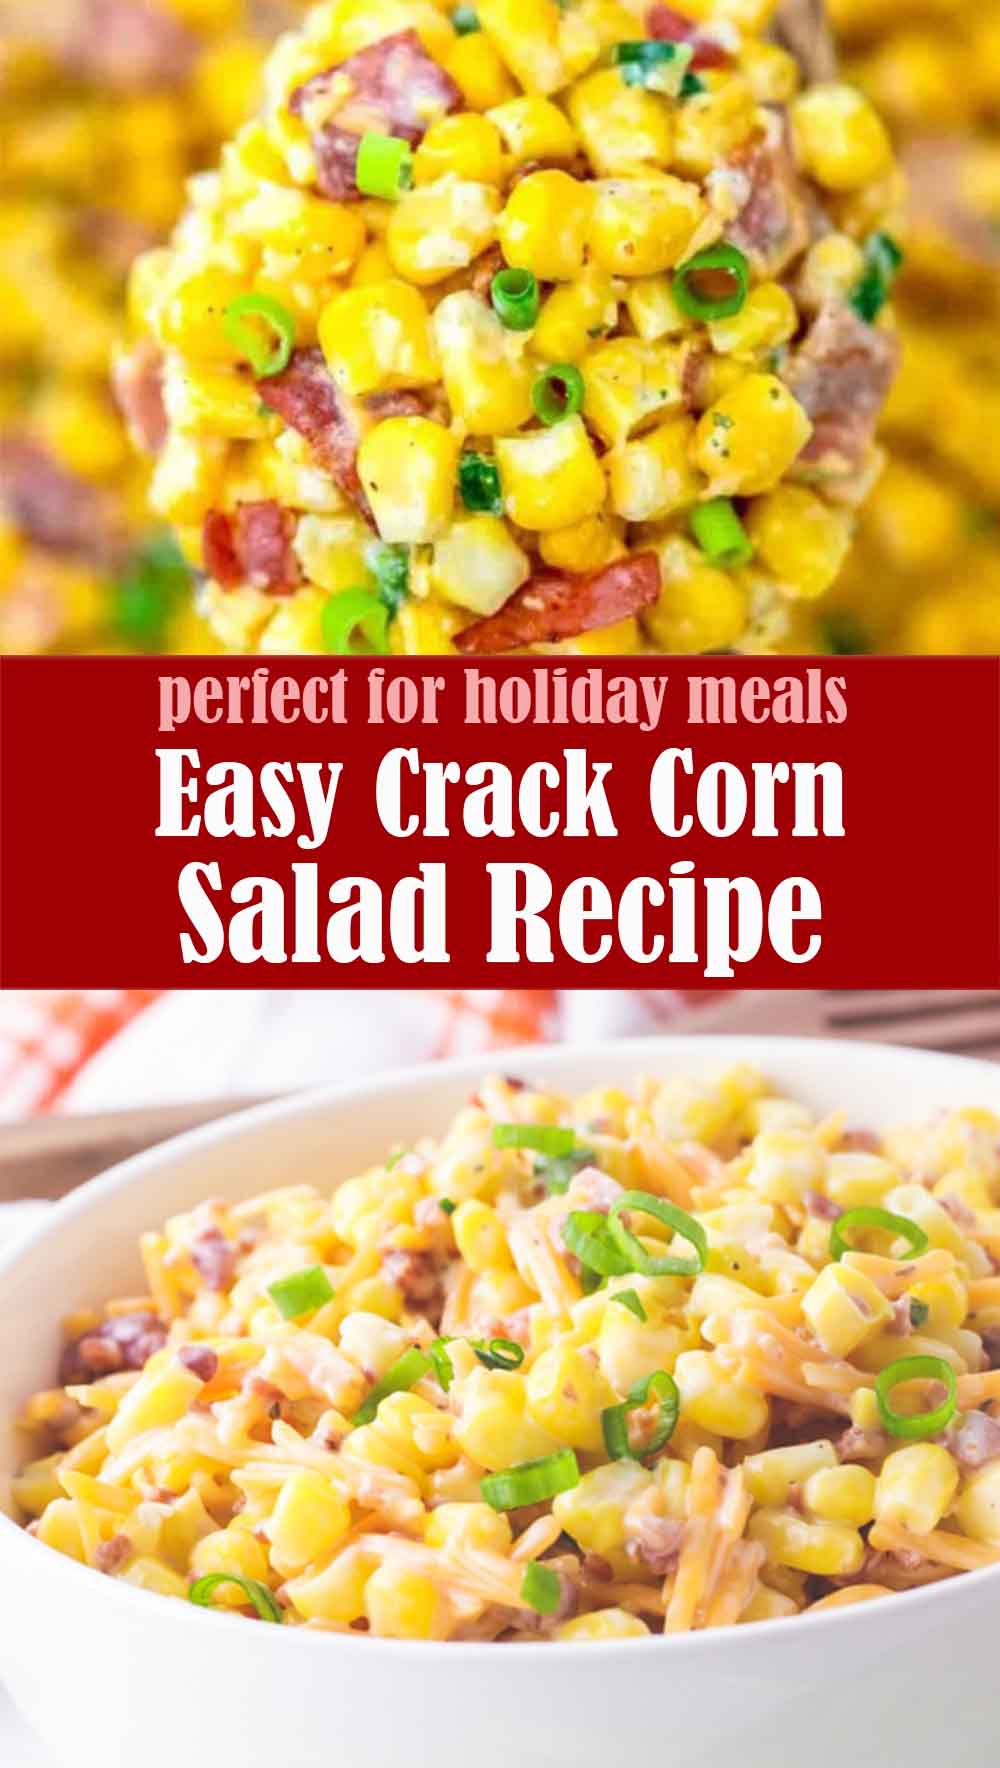 Easy Crack Corn Salad Recipe